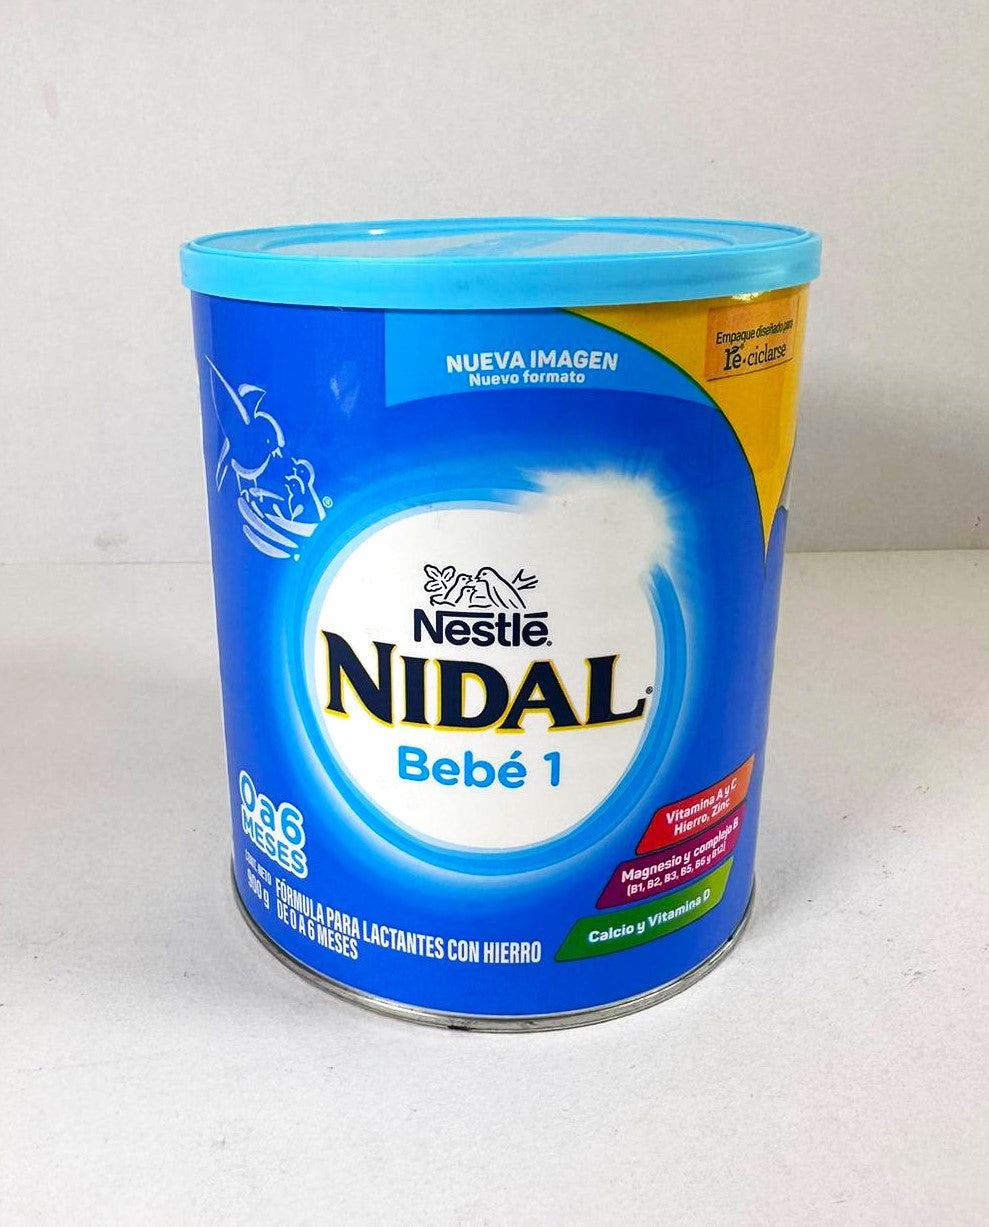 Nestlé Nidal 1 Lait En Poudre 800g 0-6 mois - Easypara